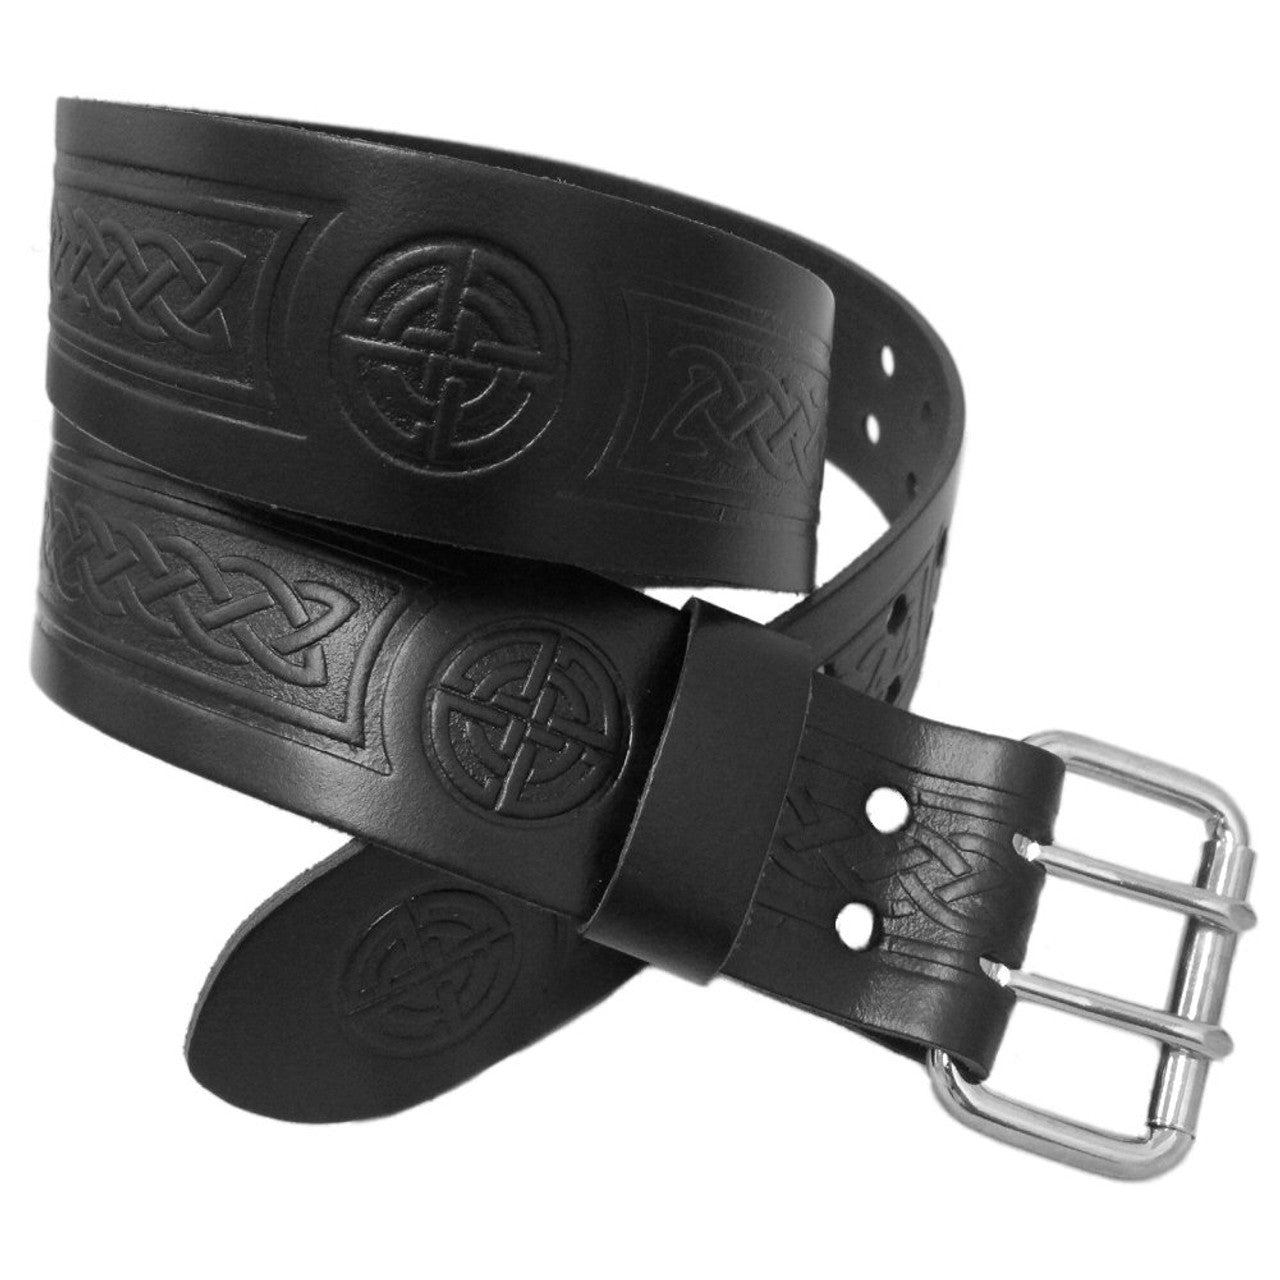 Leather Utility Kilt Belt Double Pronged Buckle Kilt Belt Scottish Highland kilt 30" to 48"